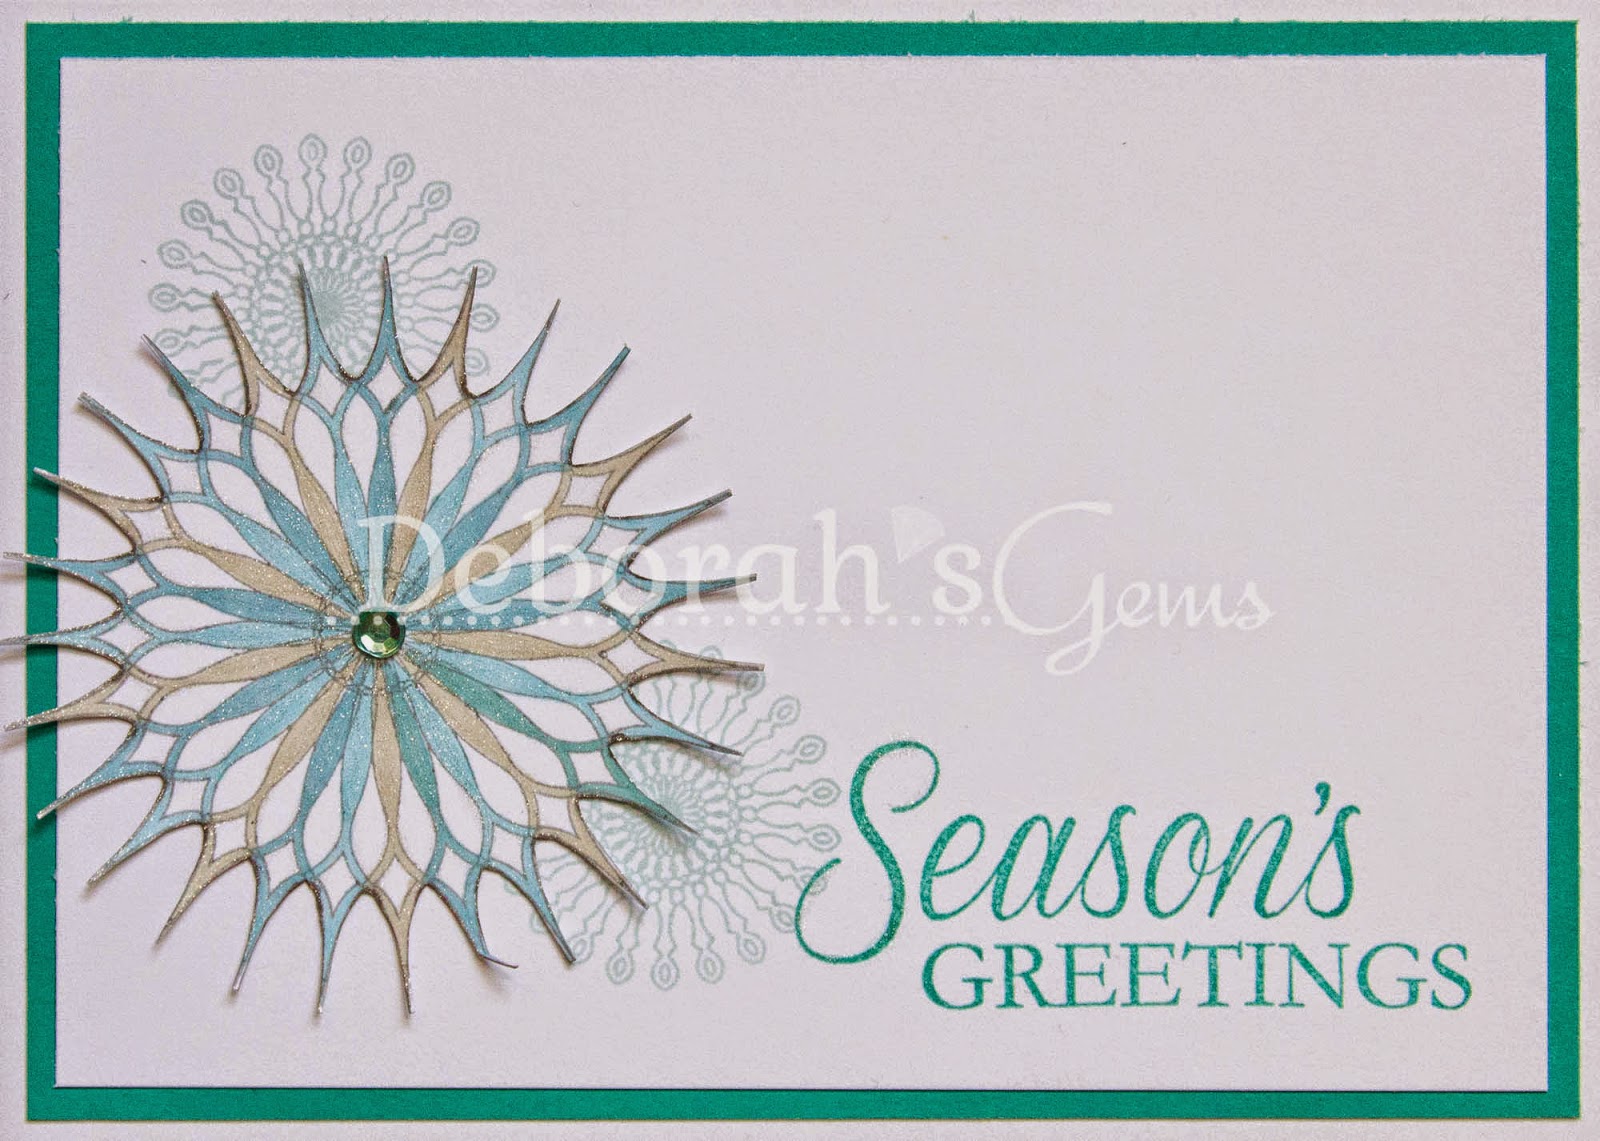 Season's Greetings - photo by Deborah Frings - Deborah's Gems